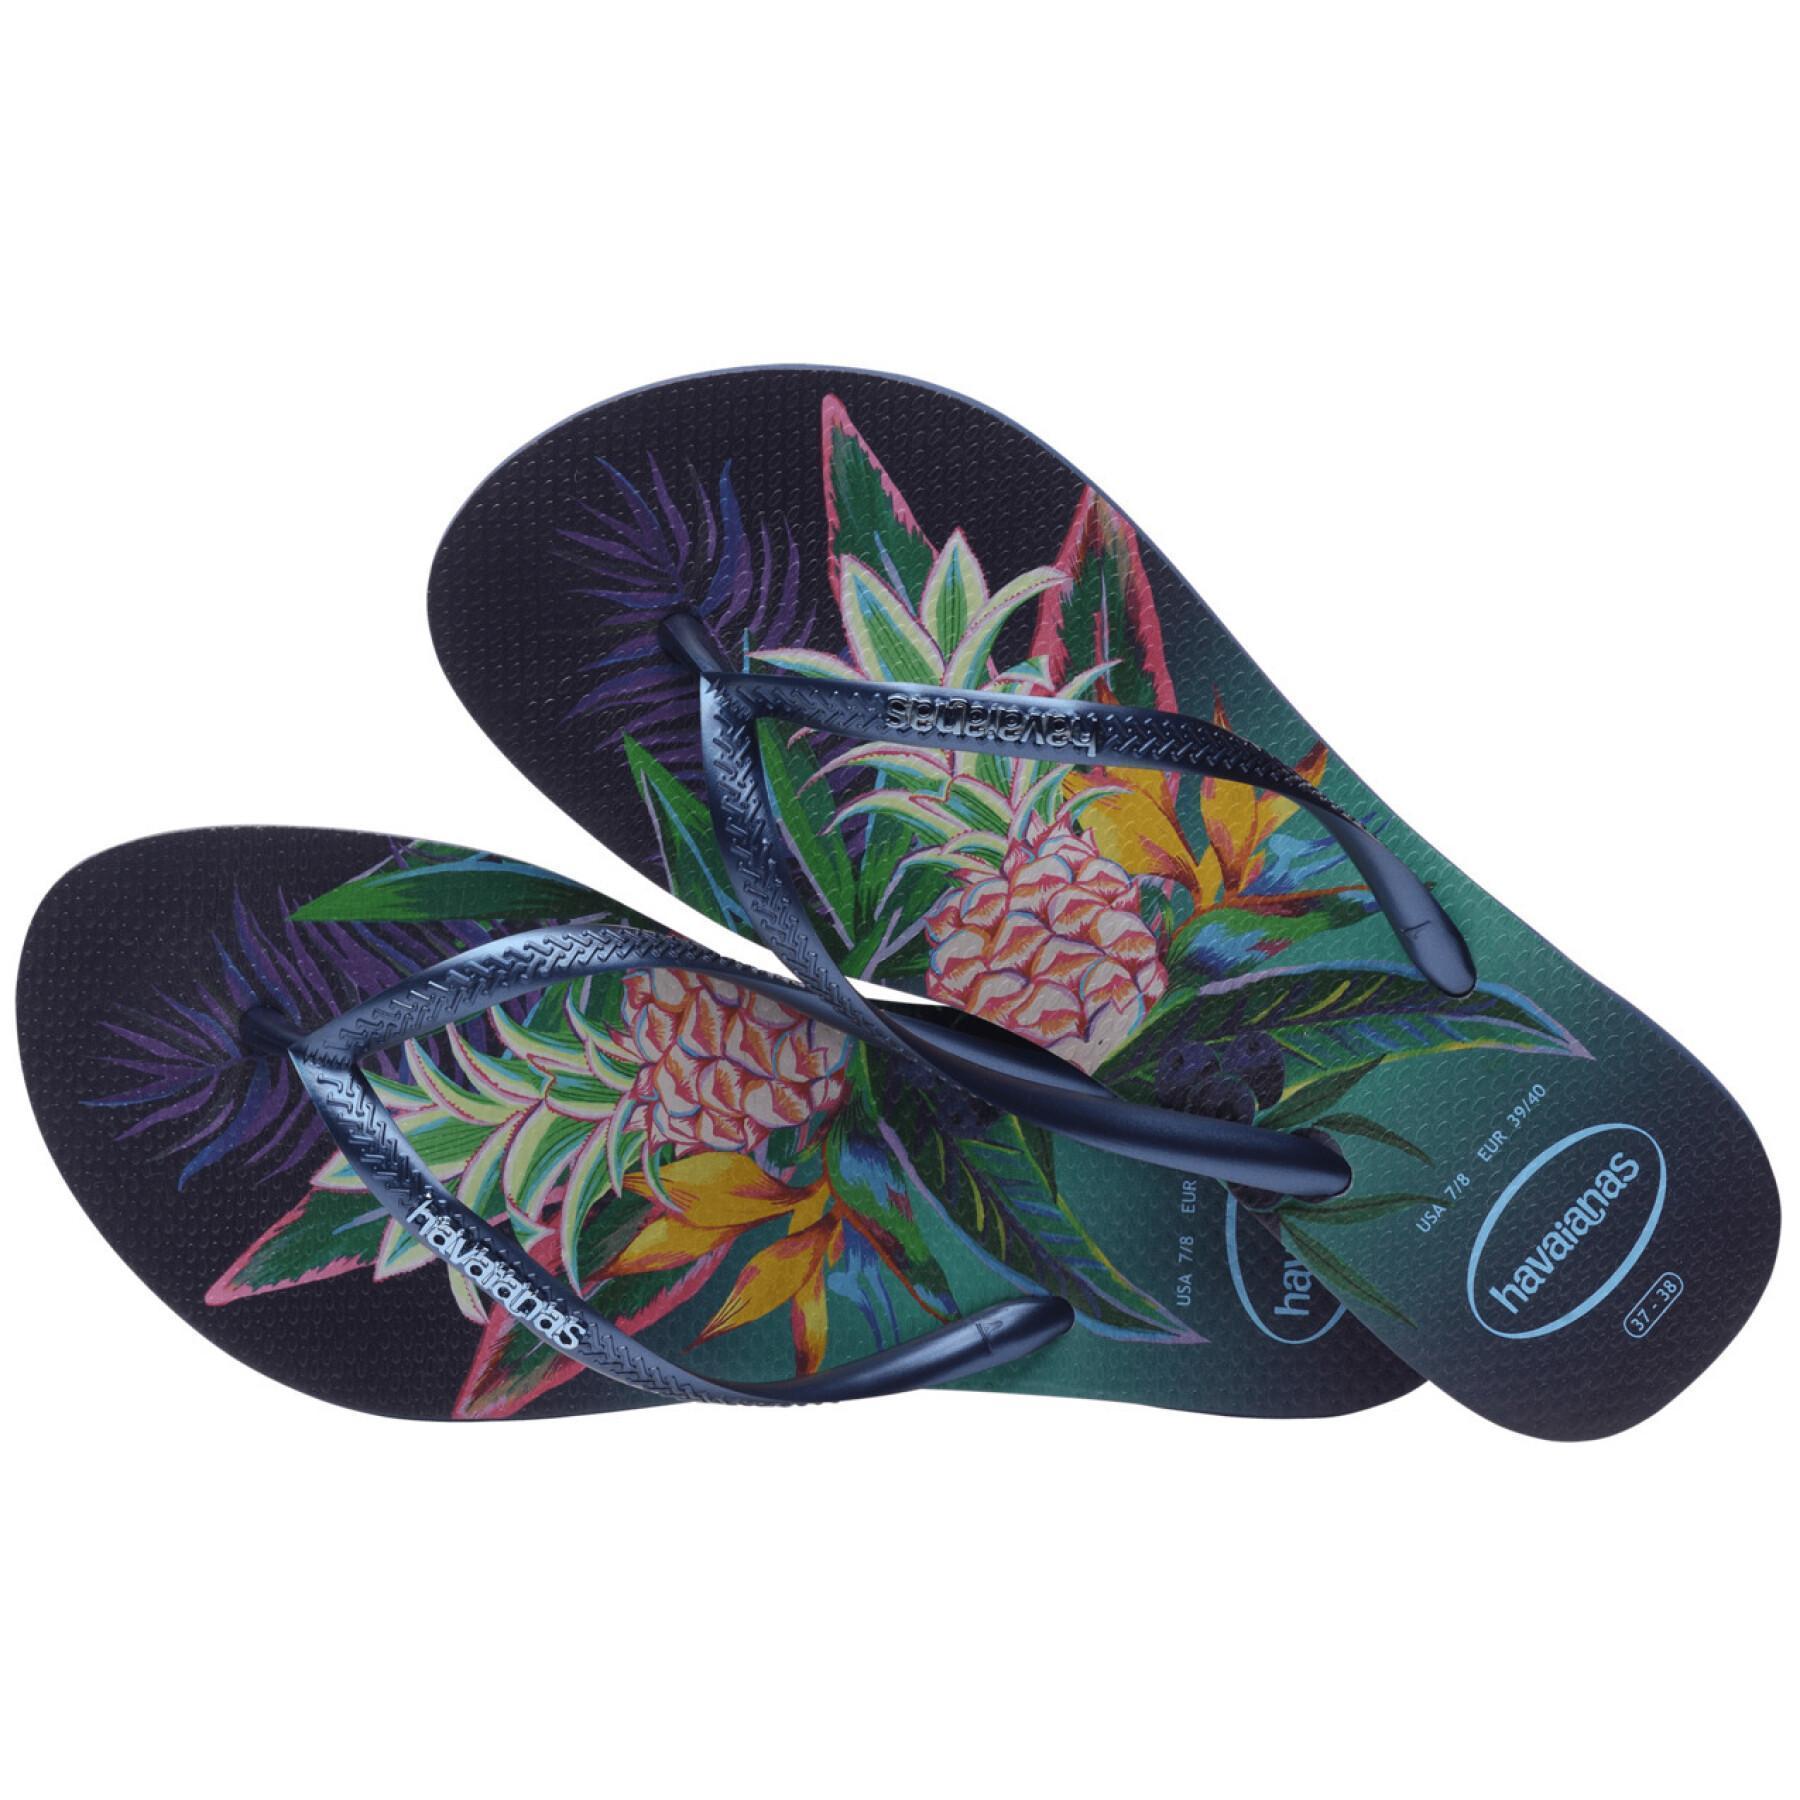 Women's flip-flops Havaianas Slim Tropical